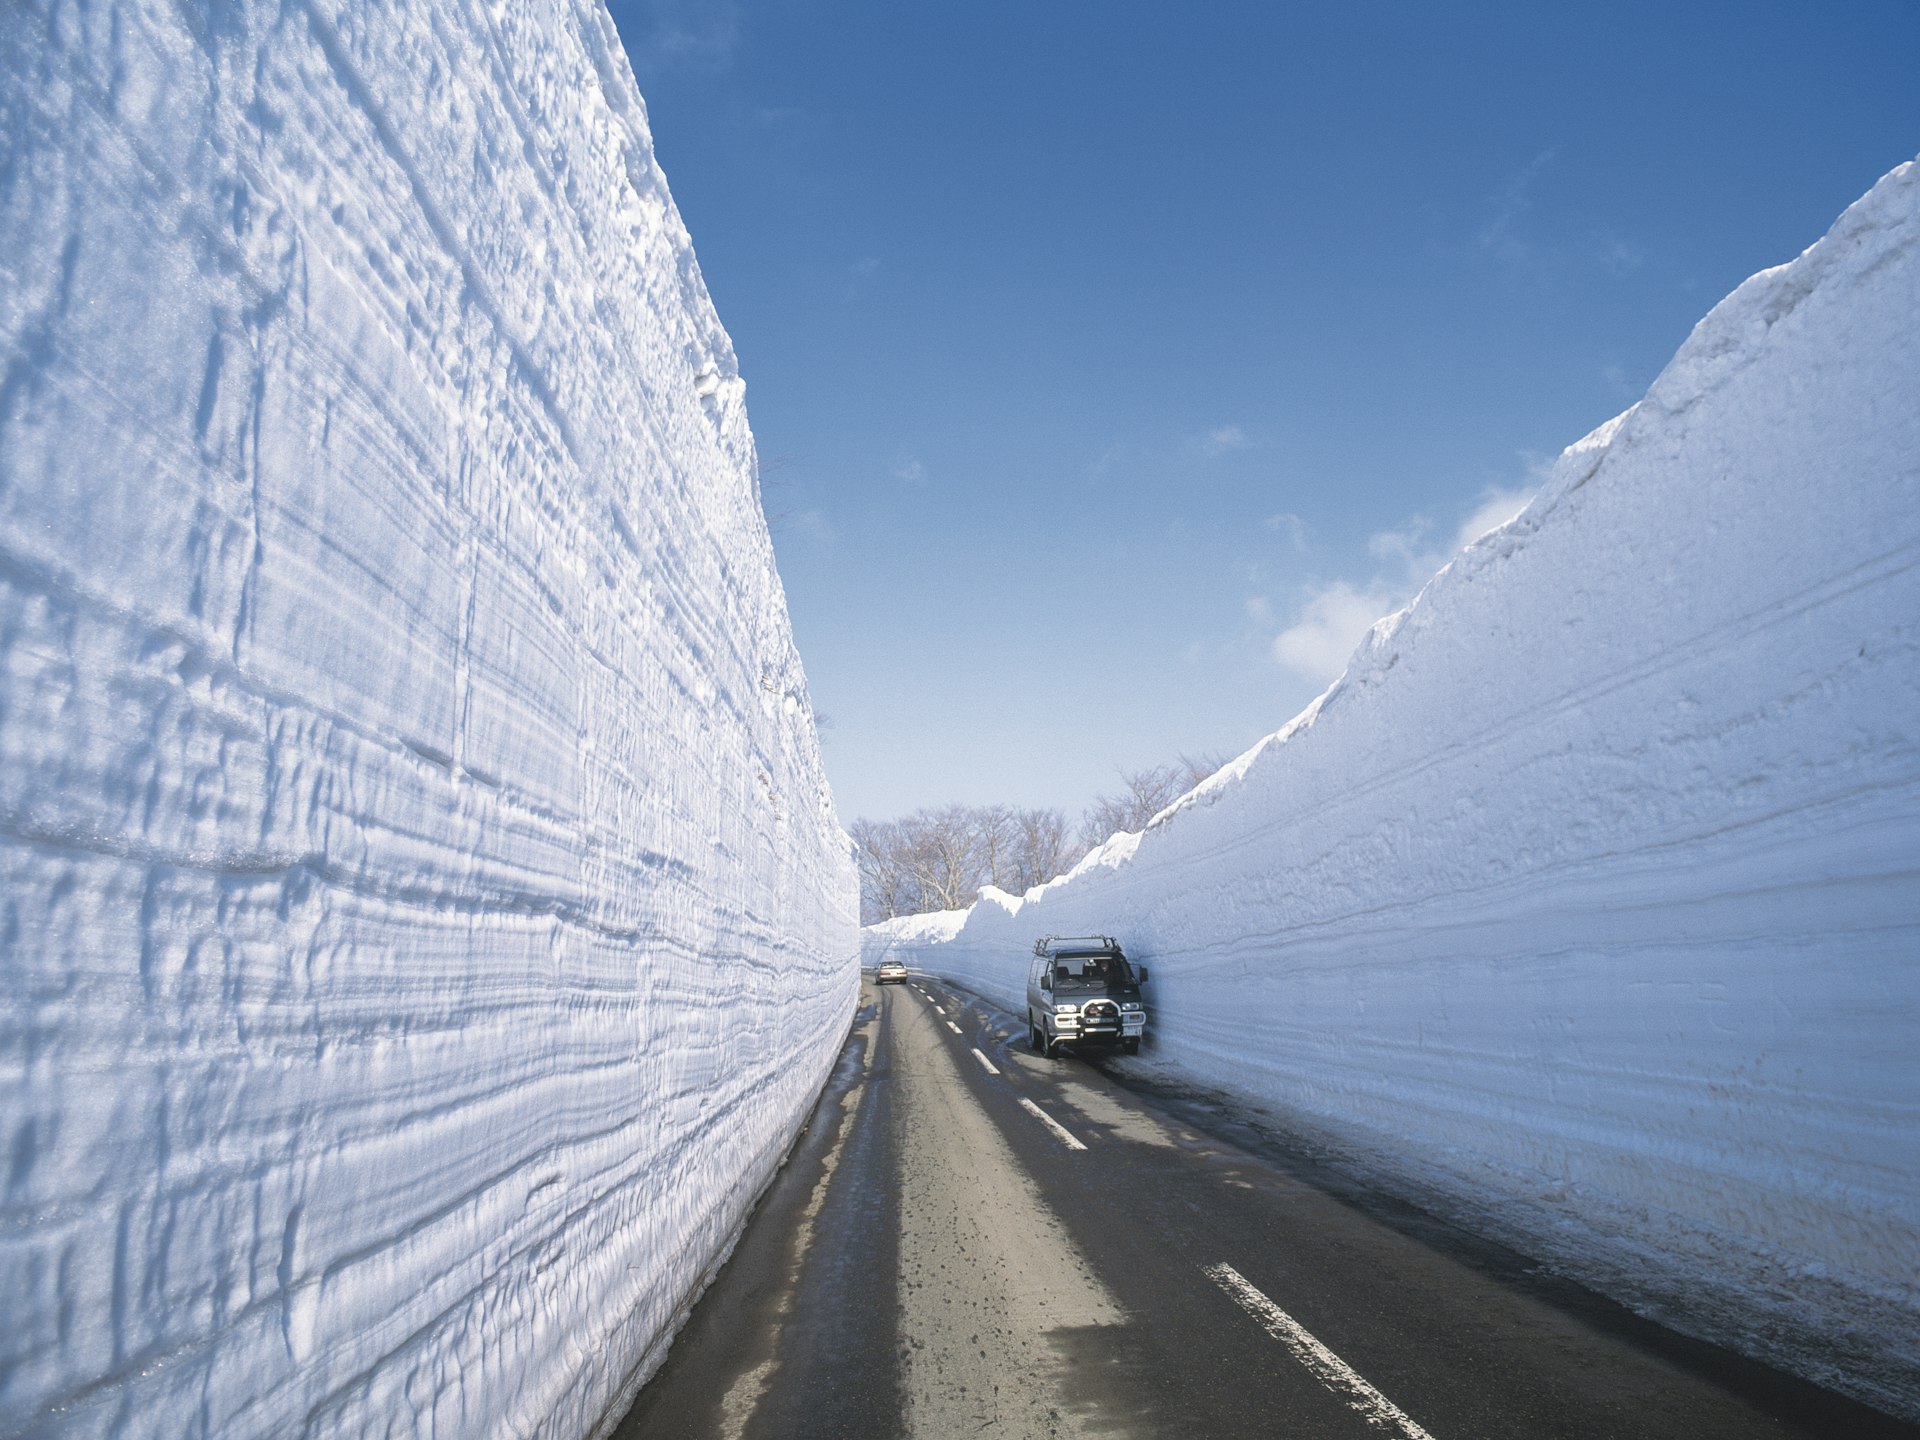 A snowy corridor in Aomori Prefecture, Japan